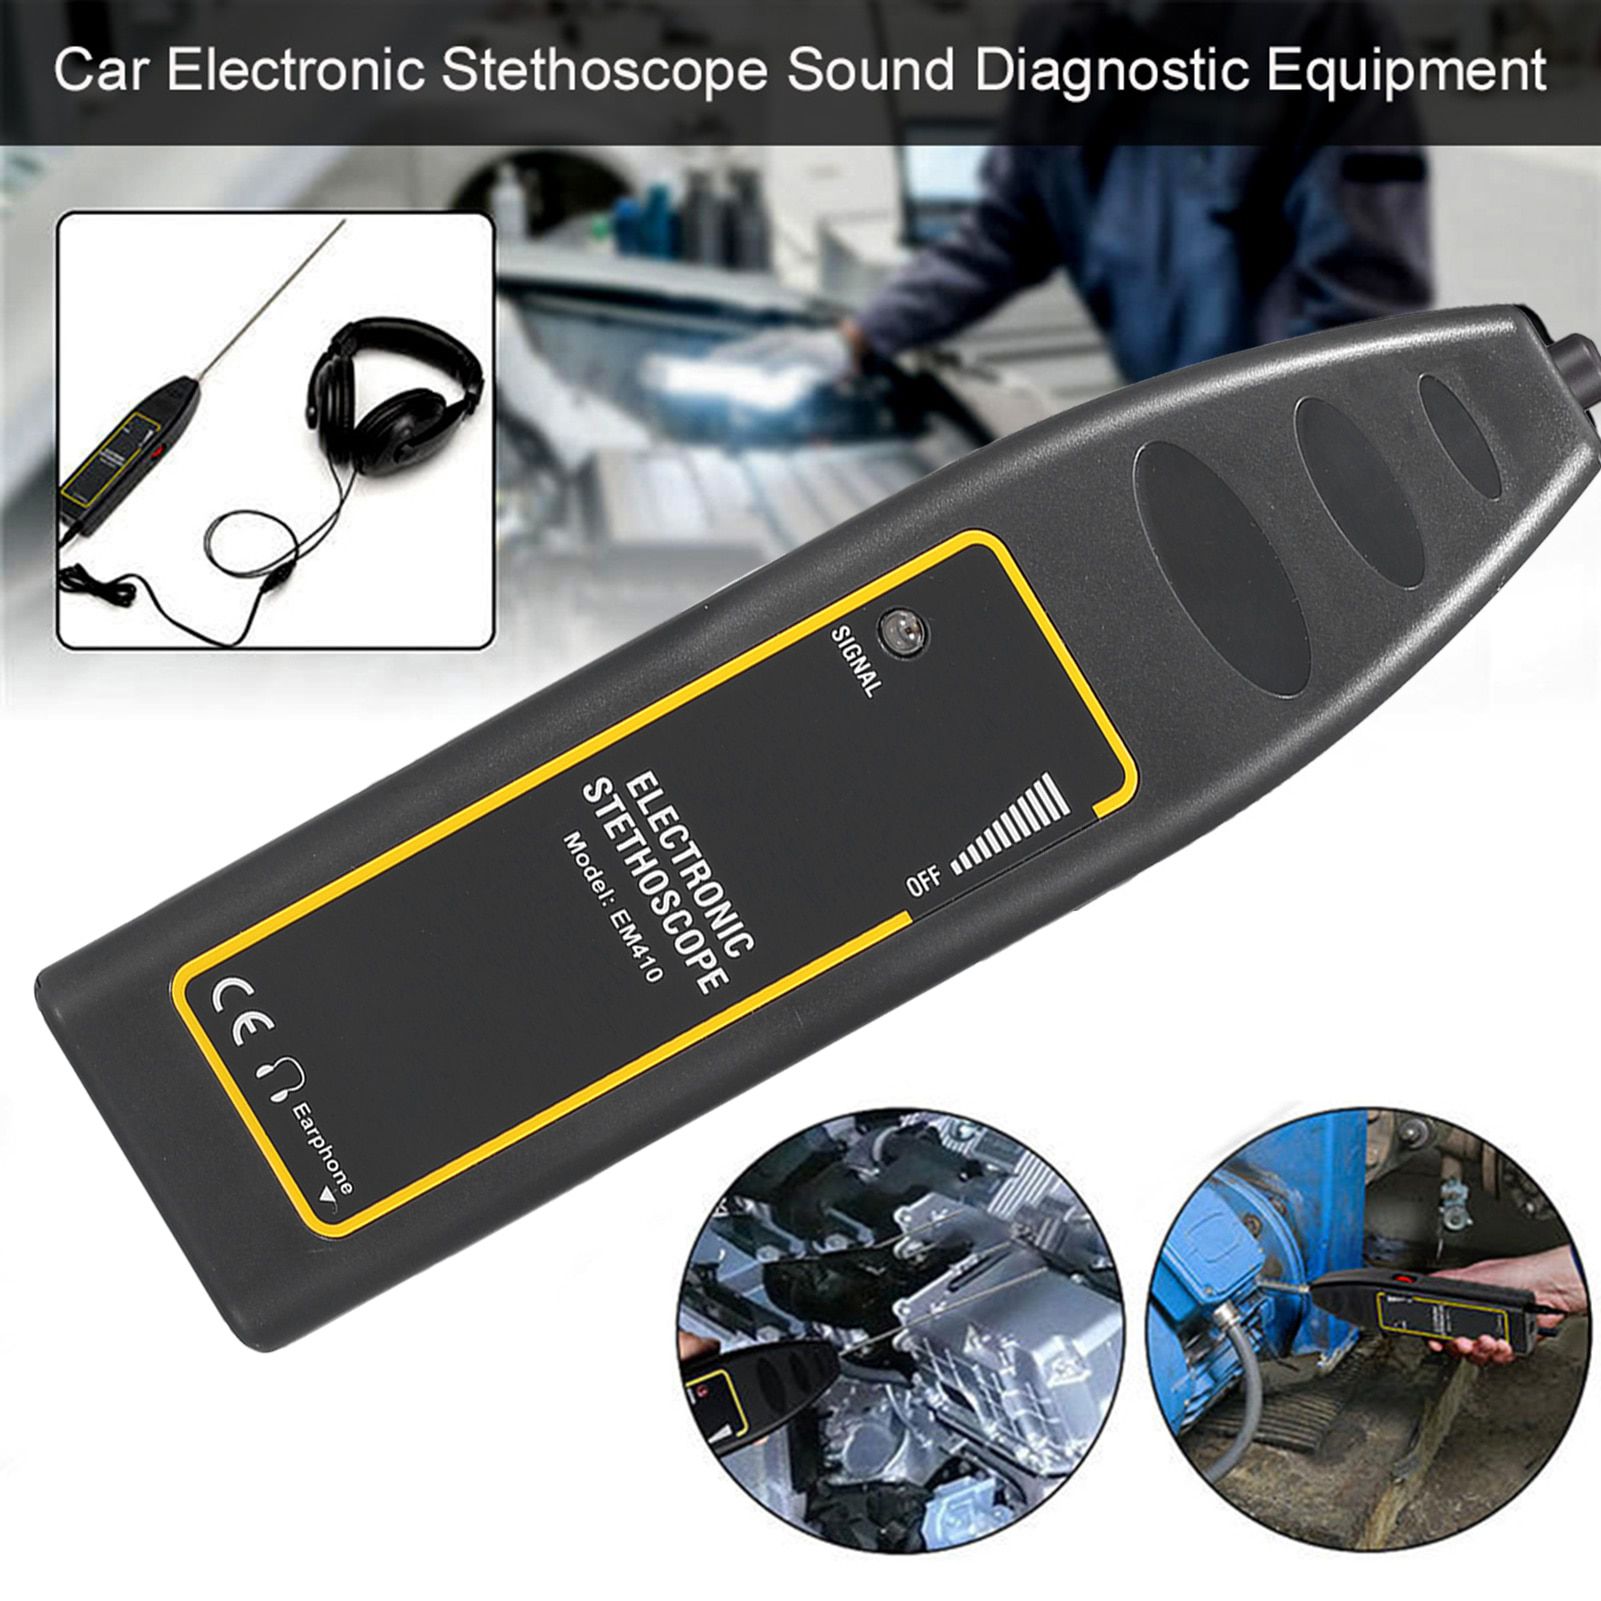 Equipamento de diagnóstico de som do estetoscópio eletrônico do carro Ferramenta de reparo do motor Detector de som anormal Localizador de ruído do carro